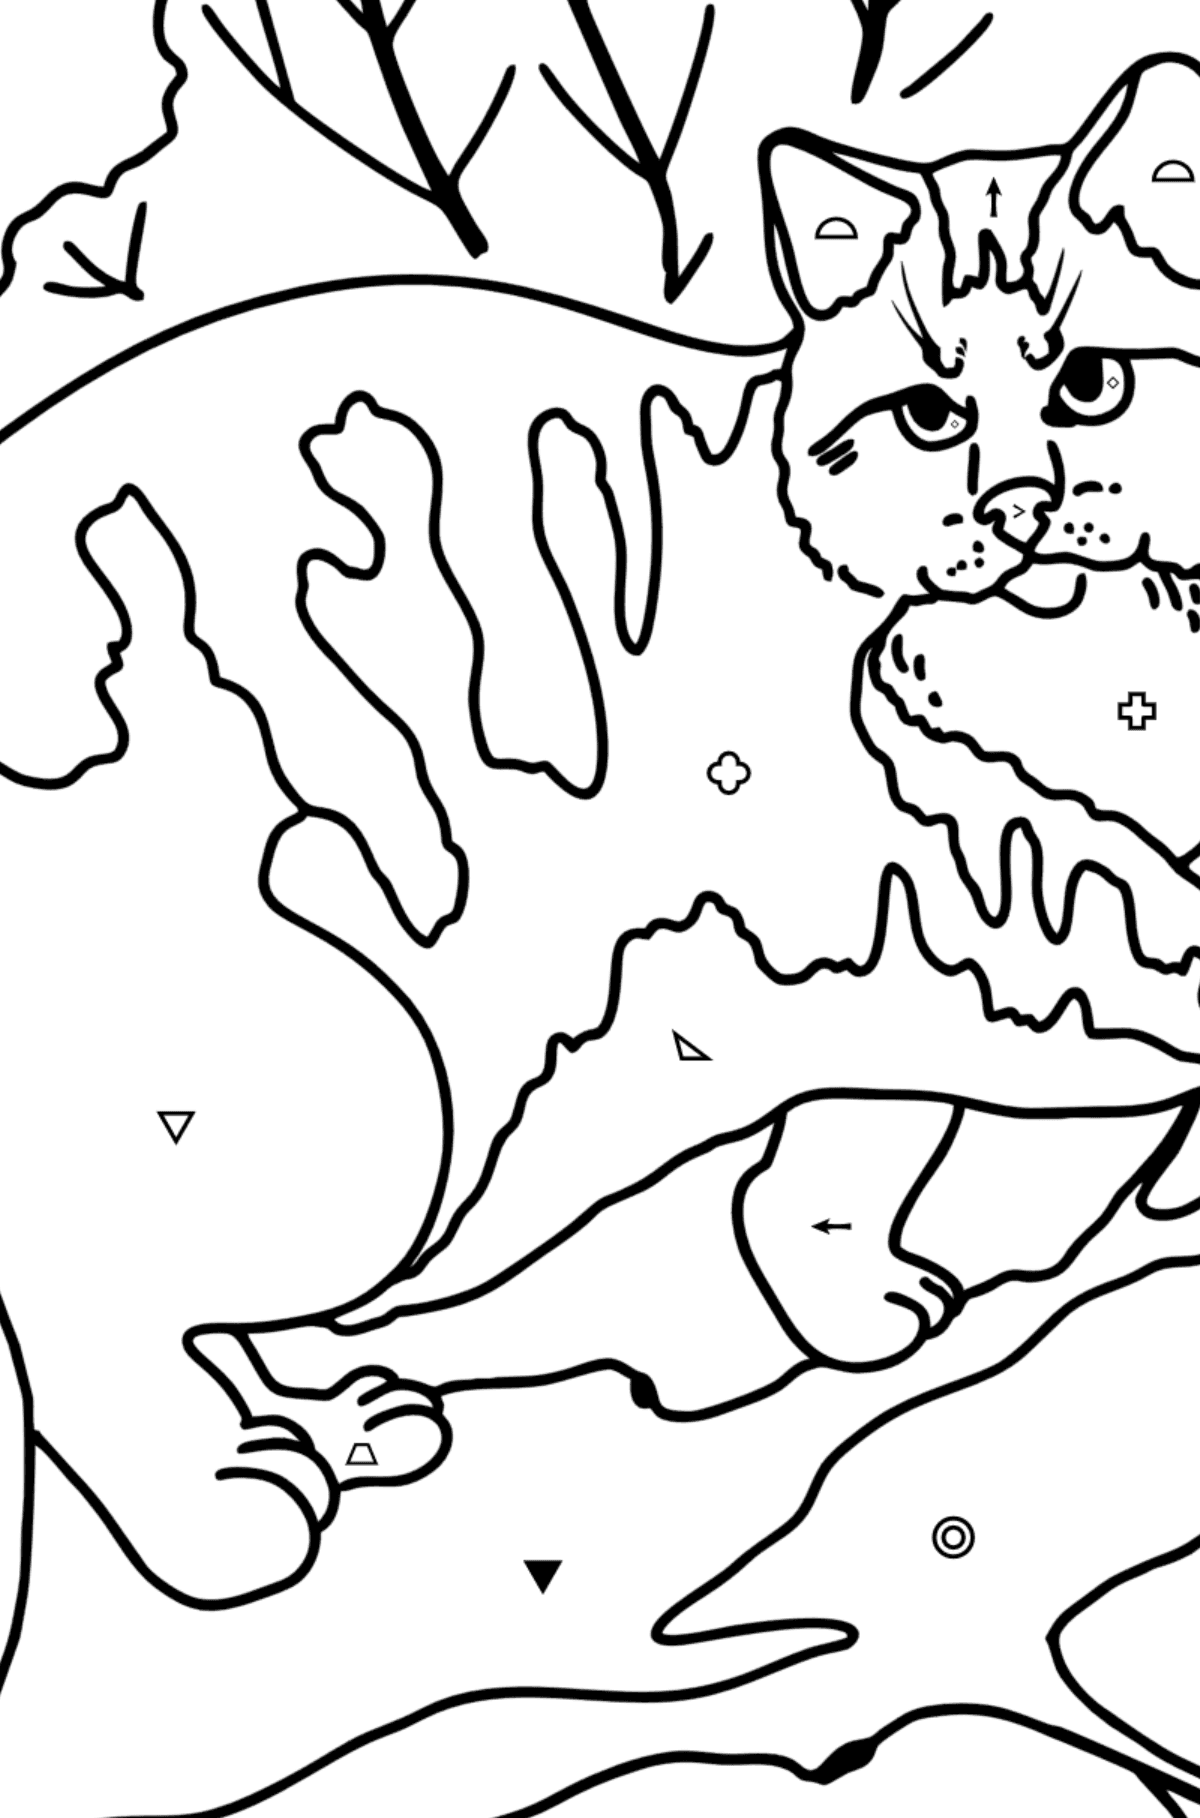 Kolorowanka Kot dzikiego lasu - Kolorowanie według symboli i figur geometrycznych dla dzieci